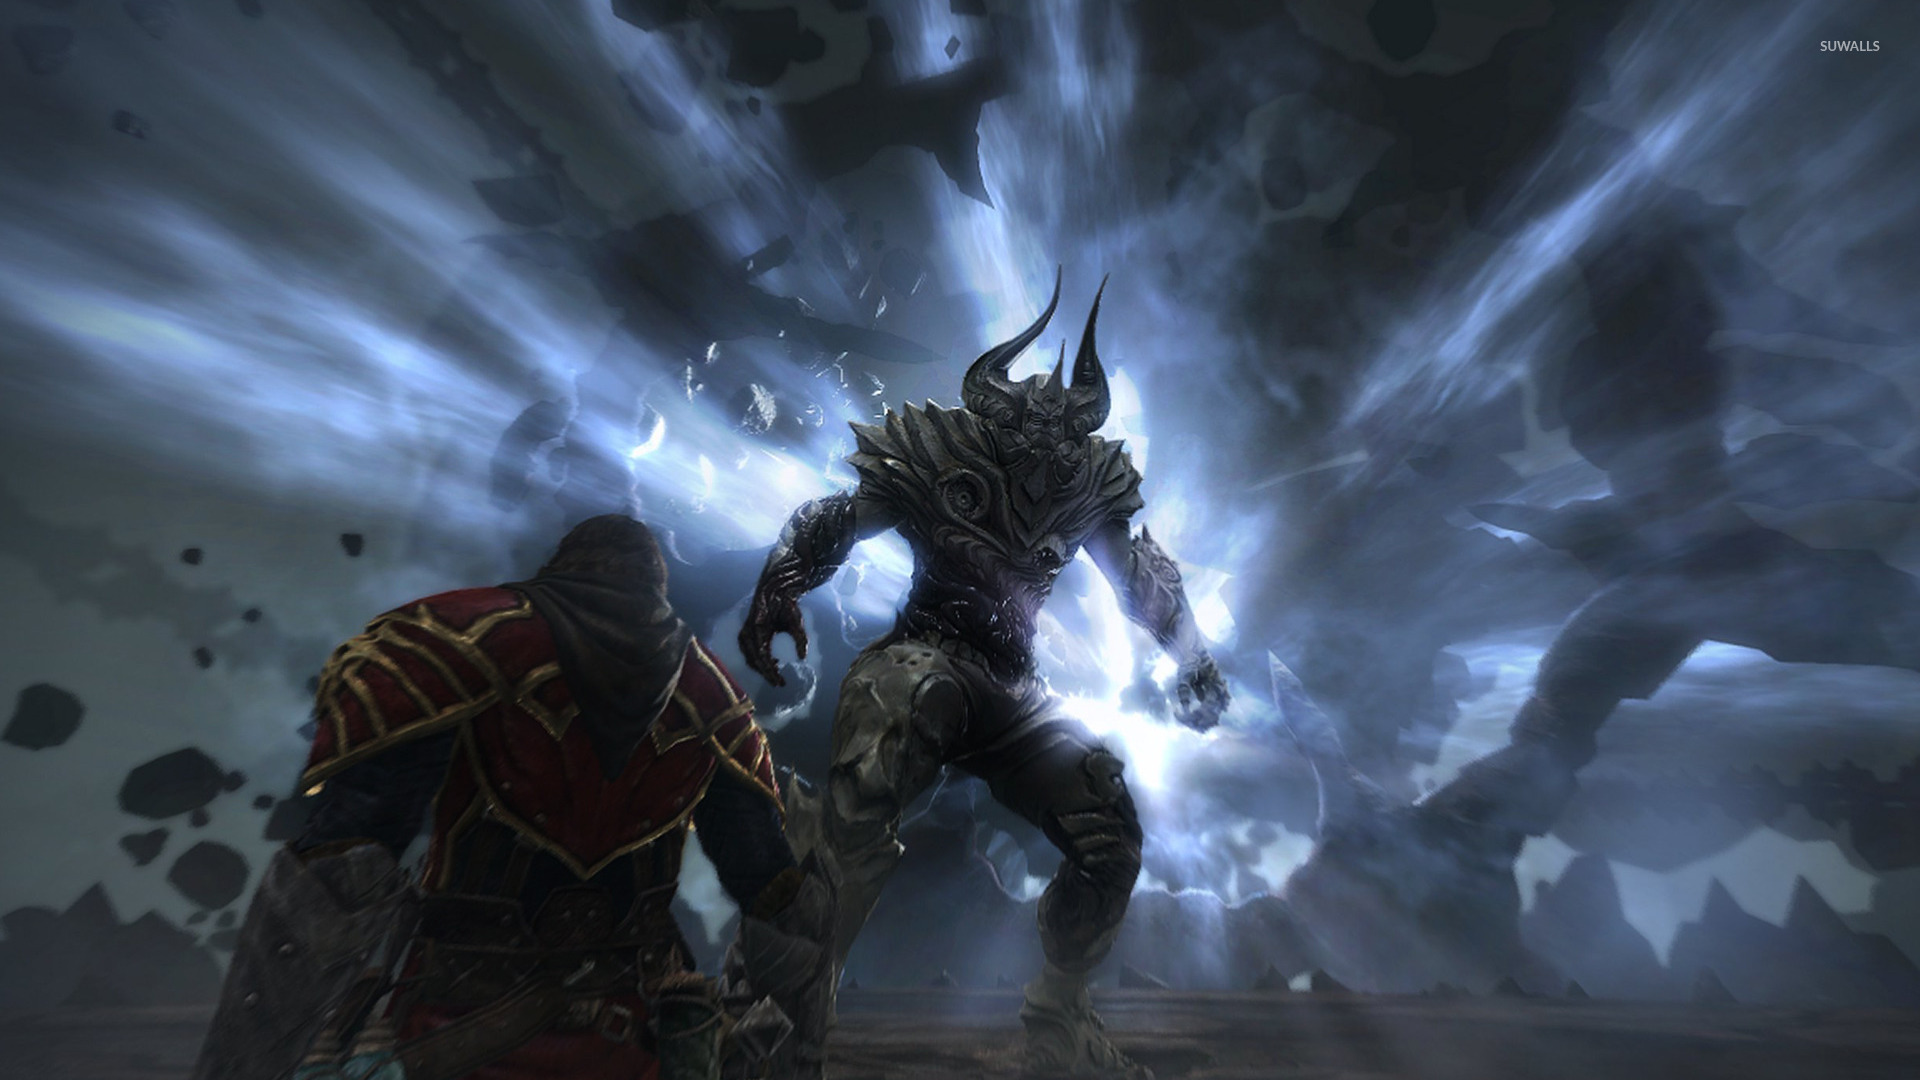 sfondo di castlevania lords of shadow 2,gioco di avventura e azione,gioco per pc,cg artwork,demone,buio